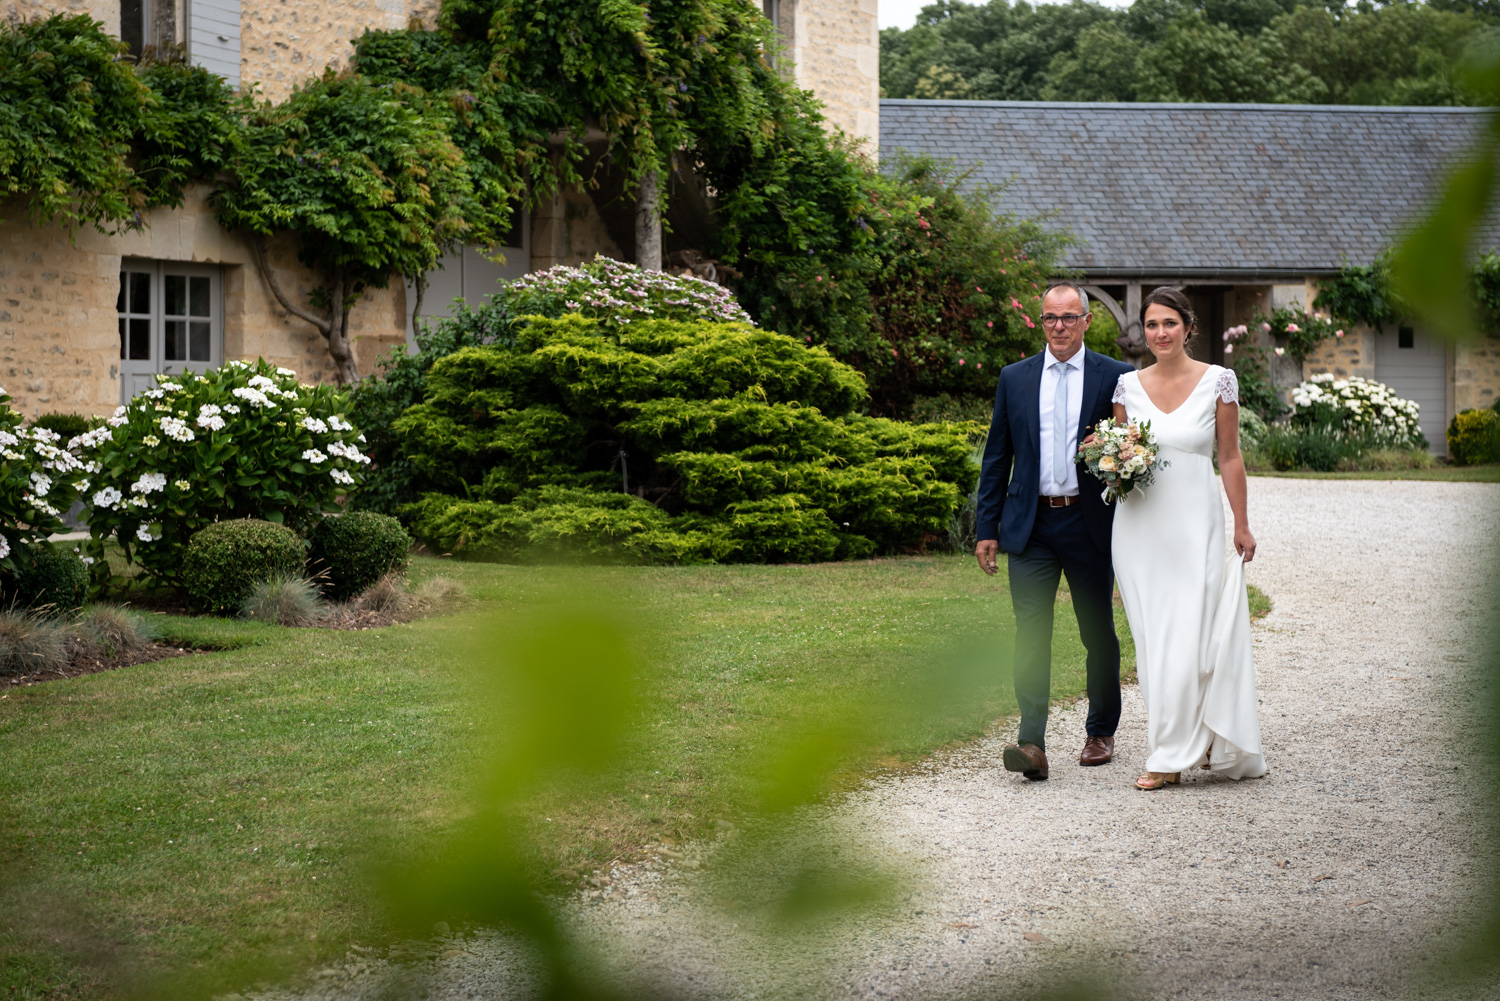 Photographe de mariage - Caen, Calvados, Normandie